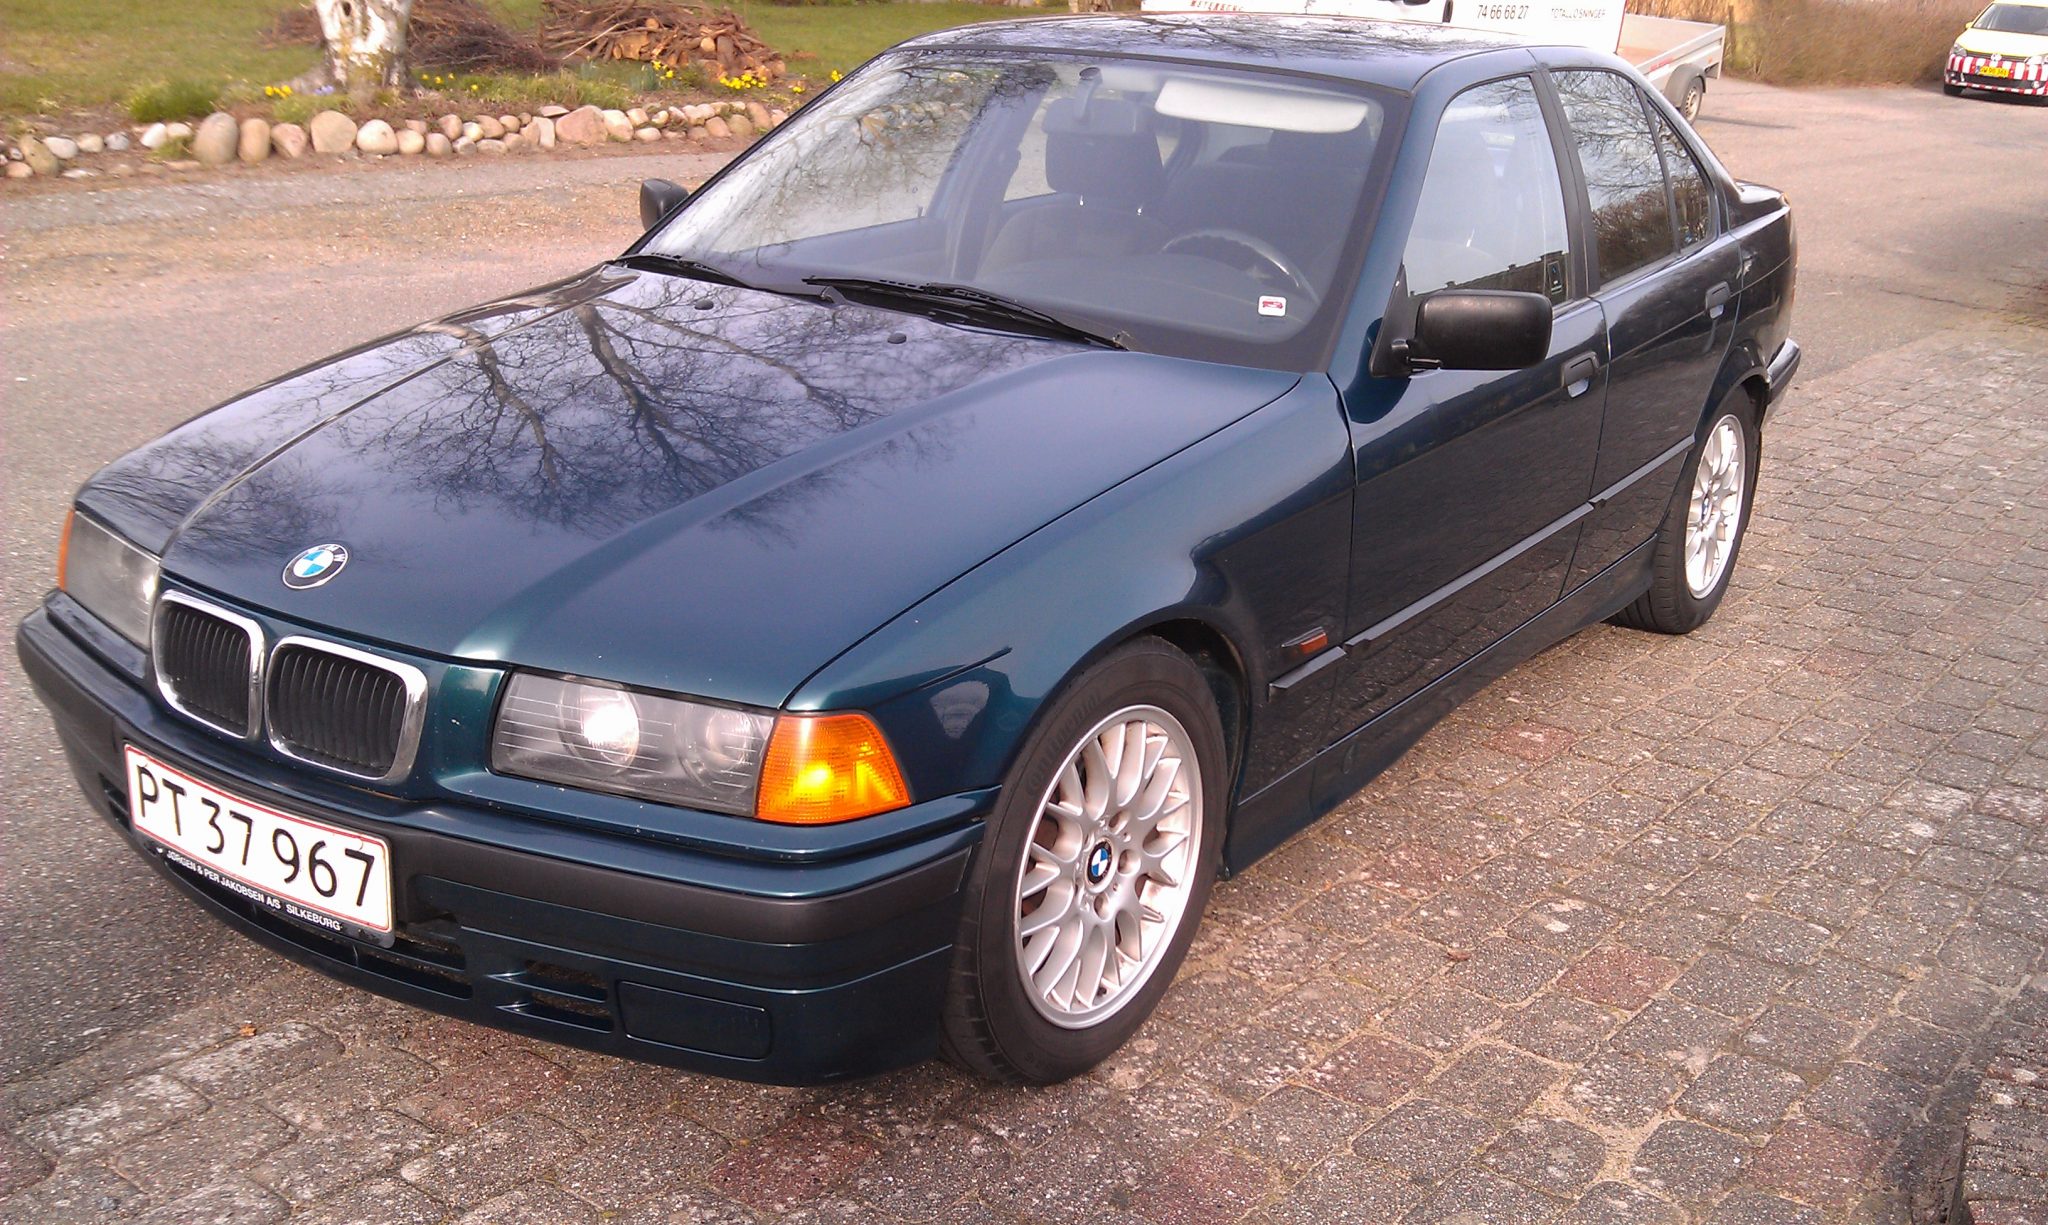 1994 BMW 316i